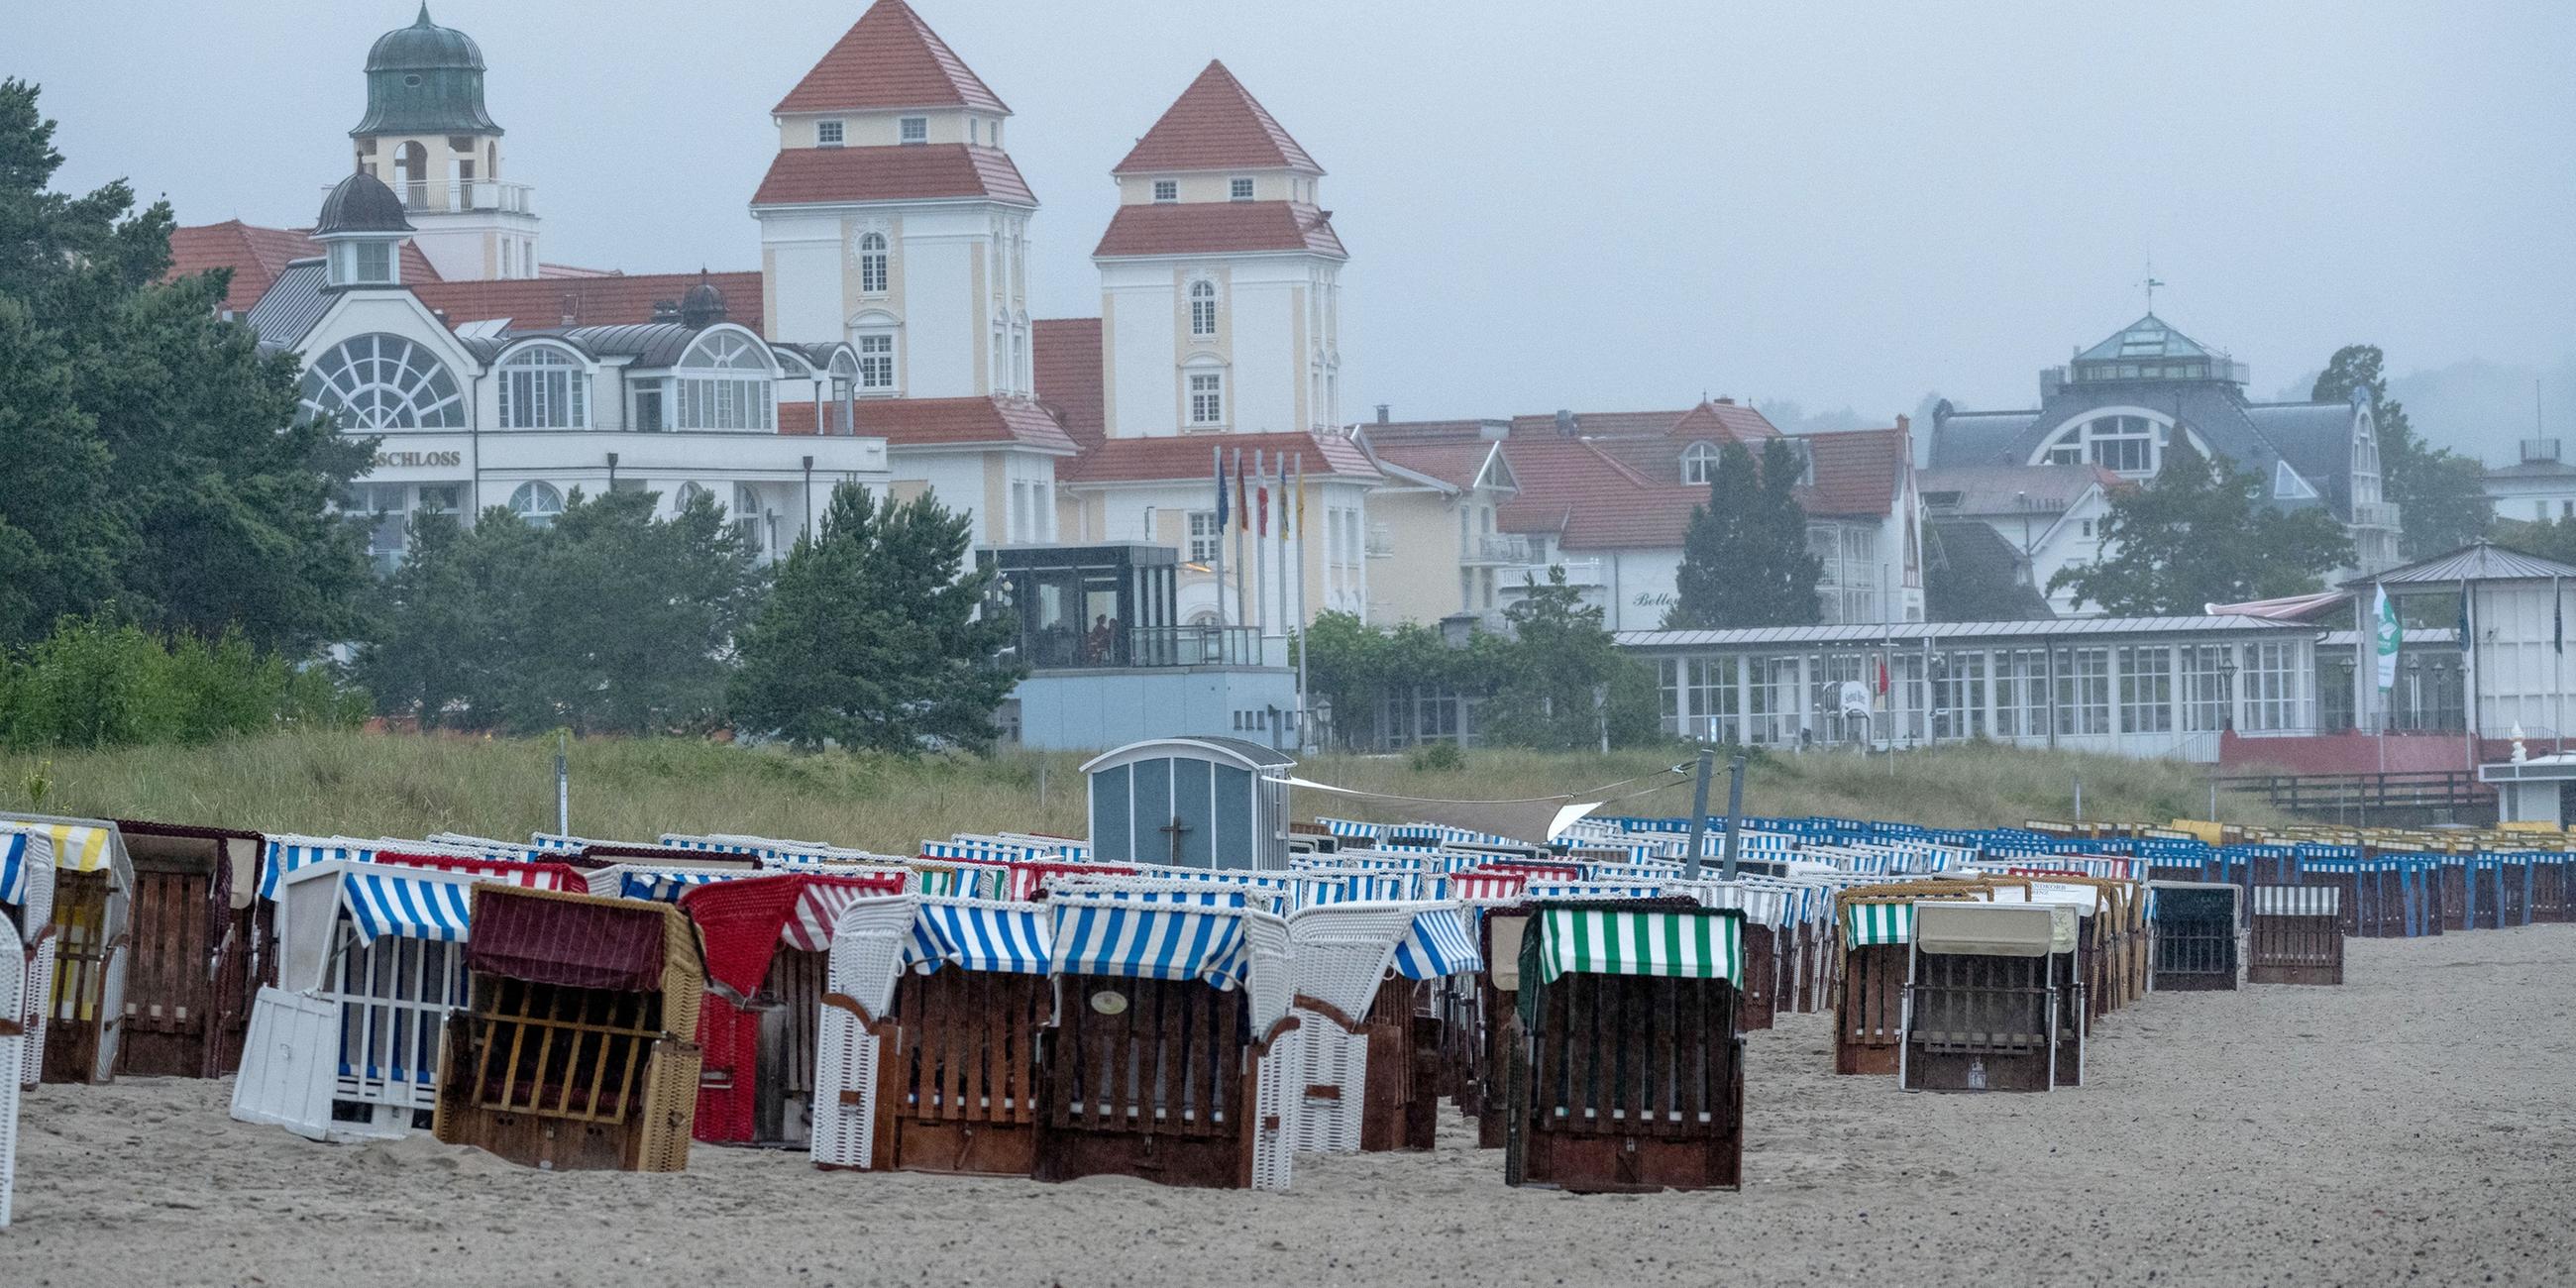 Mecklenburg-Vorpommern, Binz: Leere Strandkörbe stehen bei schlechtem Wetter am Strand des Seebades auf der Insel Rügen.